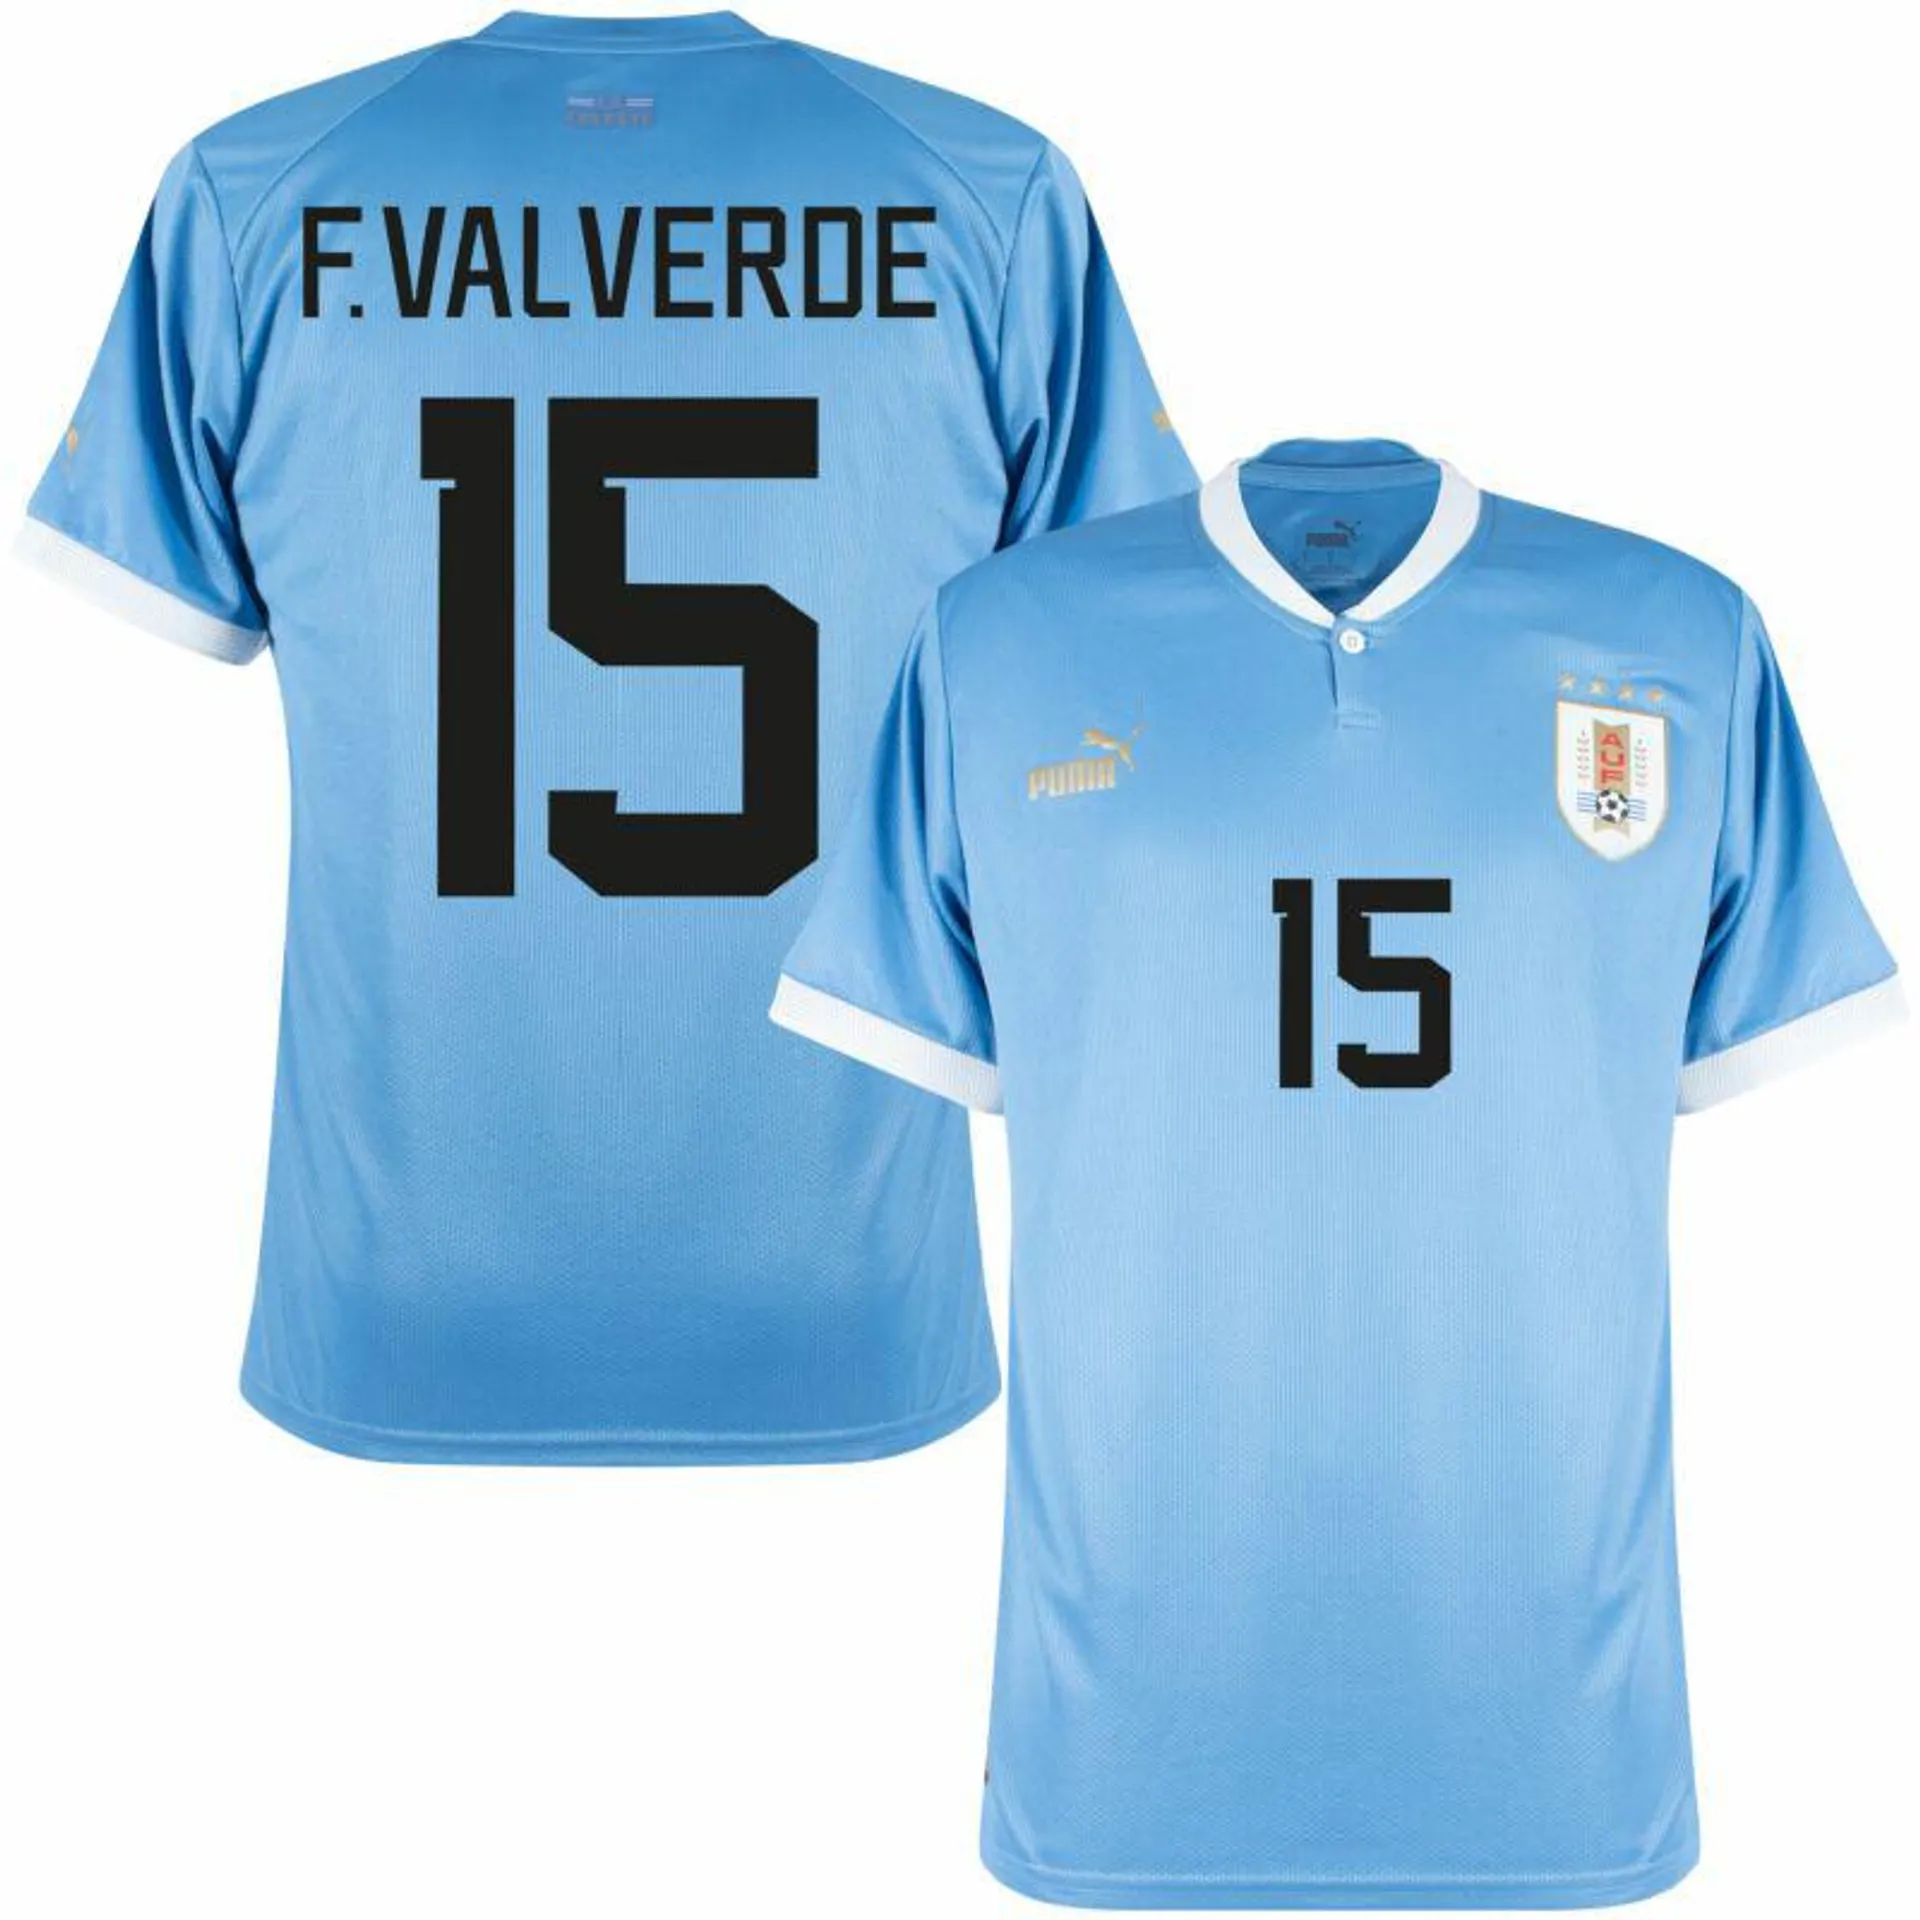 Puma Uruguay Home F.Valverde 15 Shirt 2022-2023 (Official Printing)